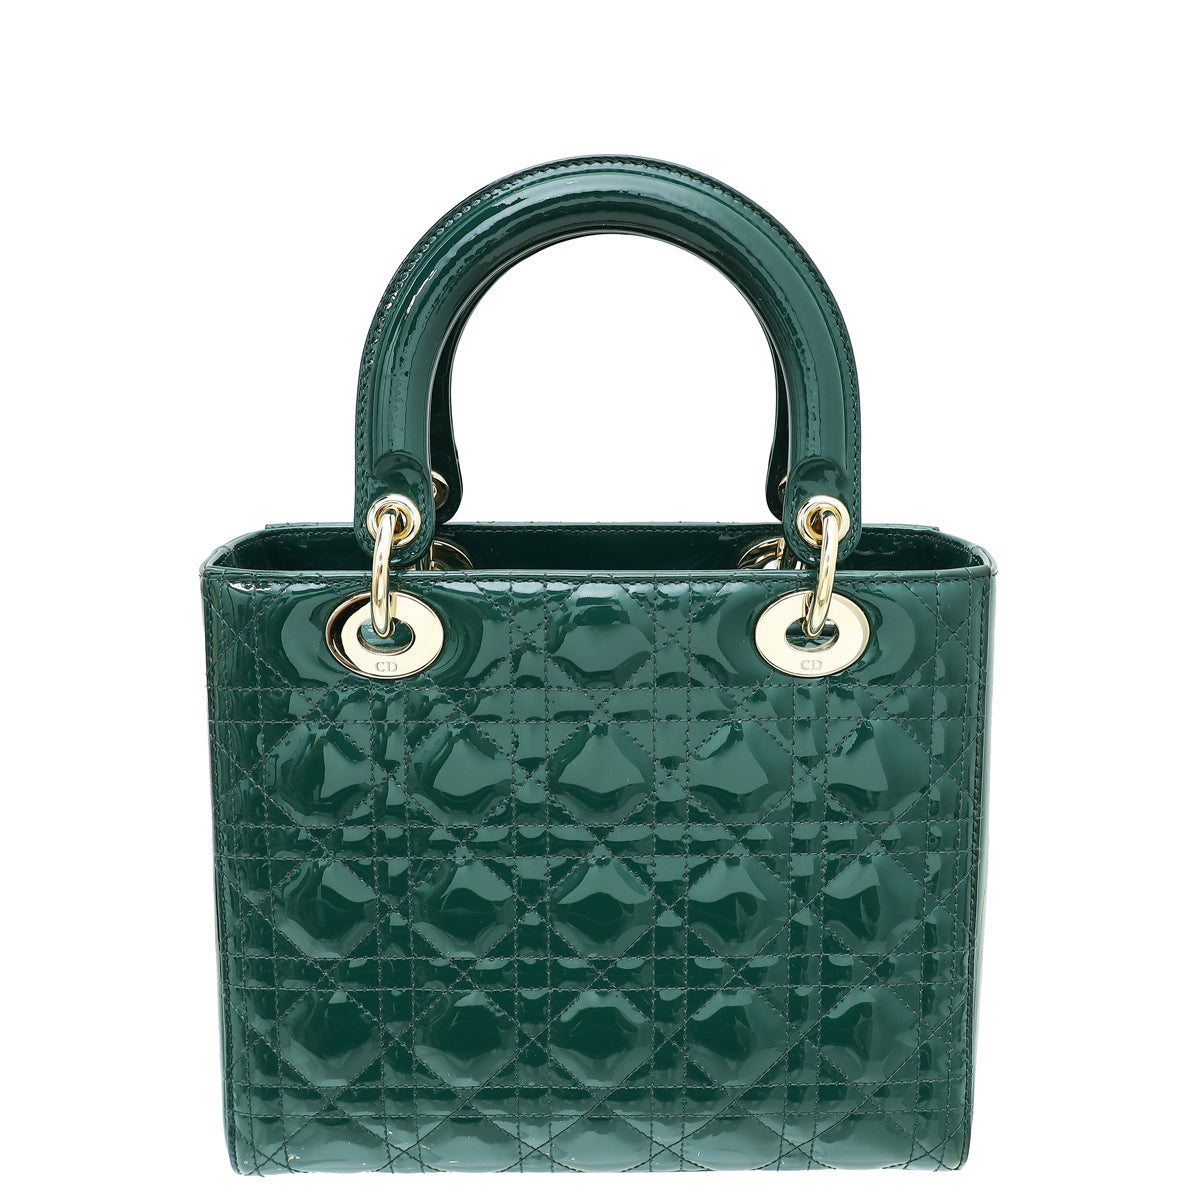 Christian Dior Green Lady Dior Medium Bag